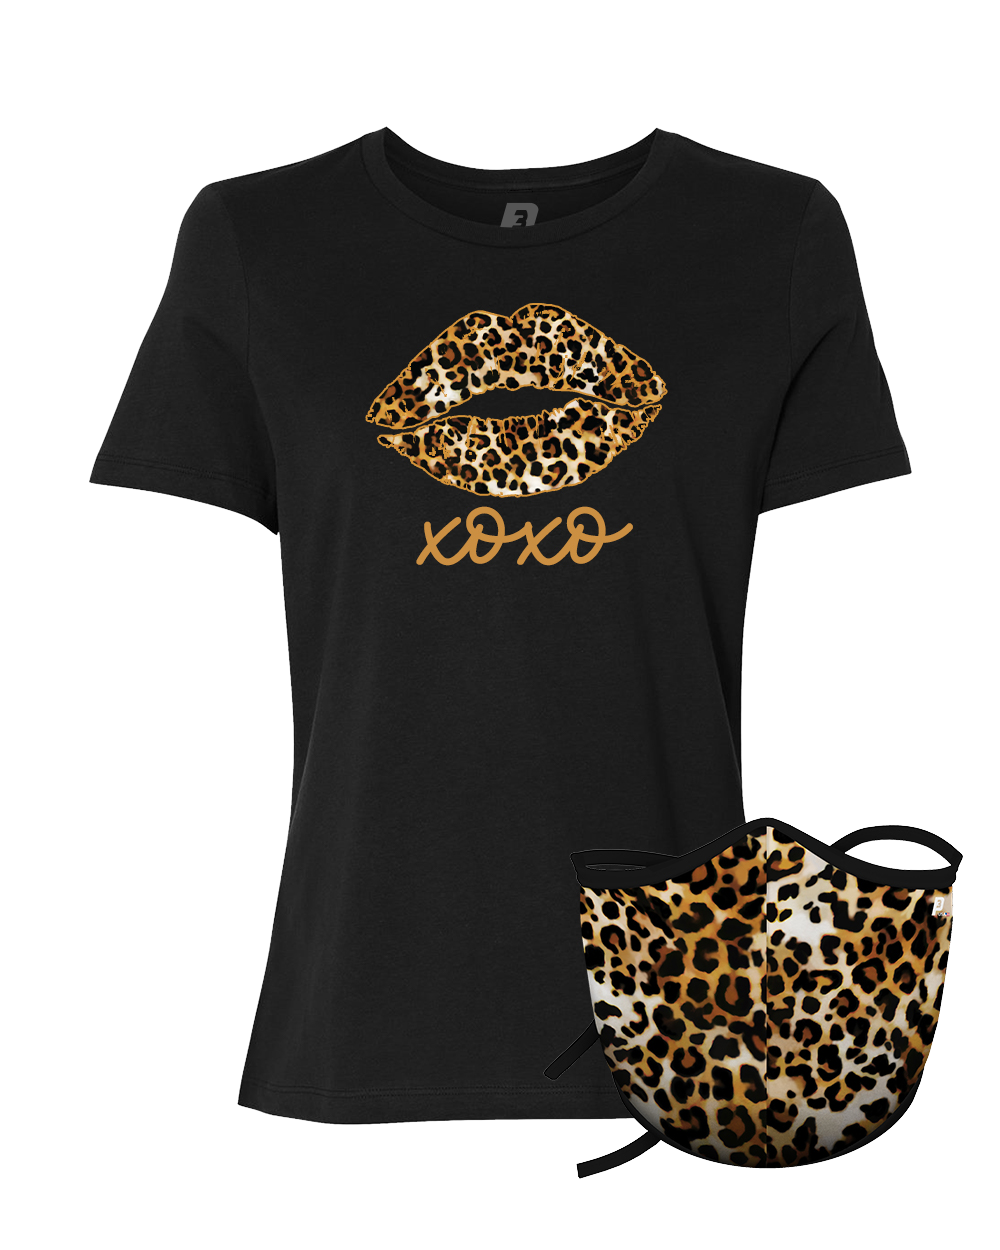 Cheetah Pack (Women's)